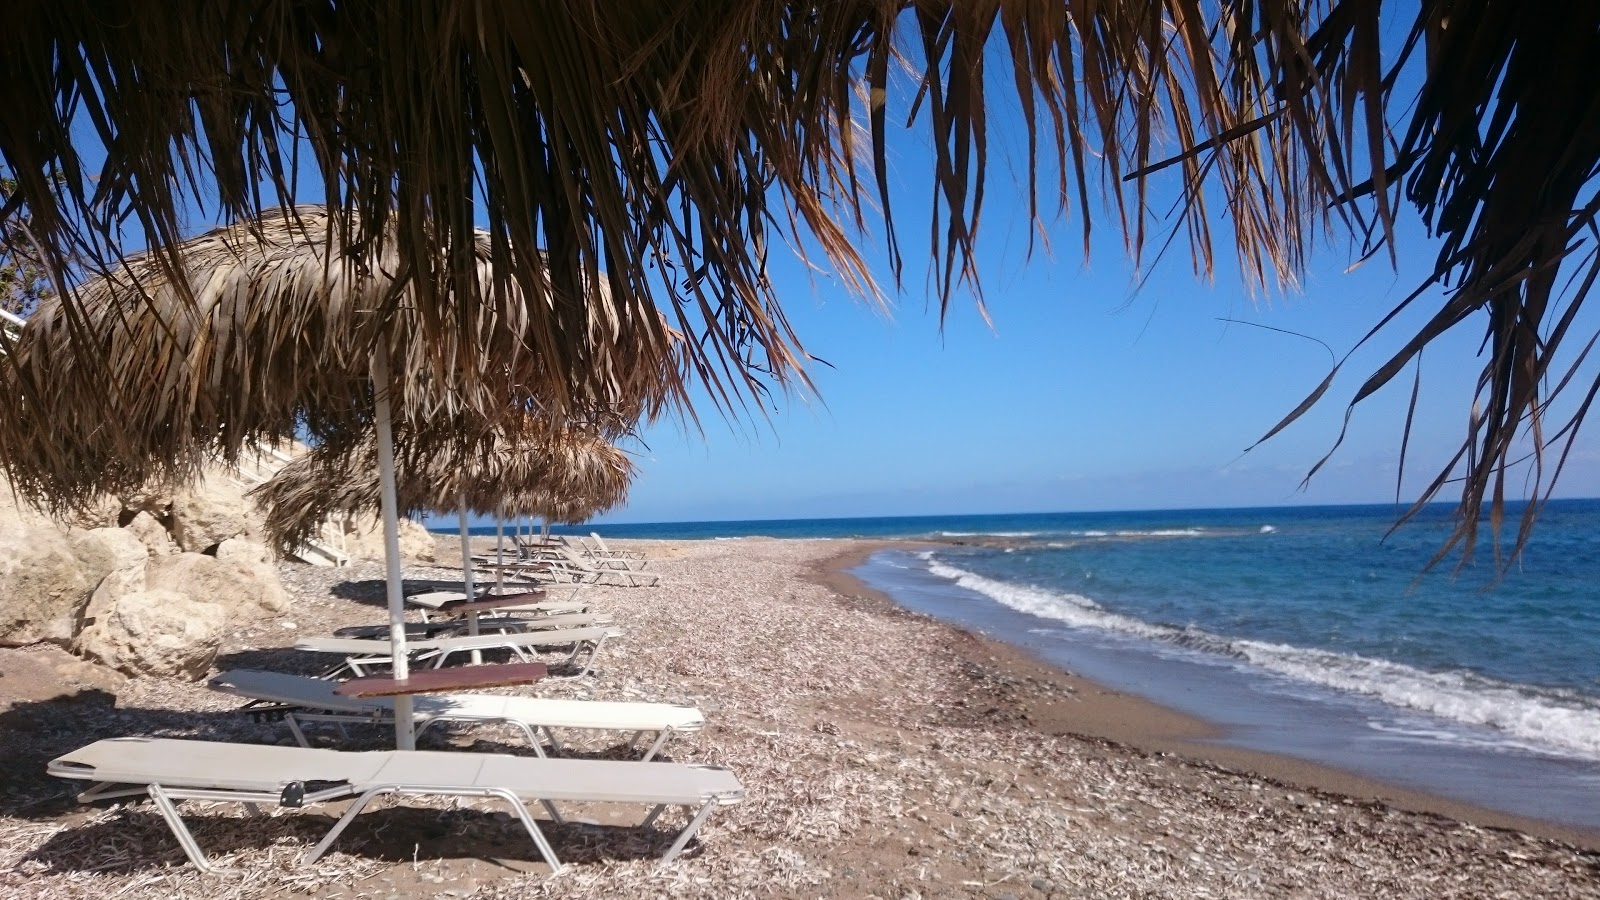 Zdjęcie Bonamare beach - popularne miejsce wśród znawców relaksu